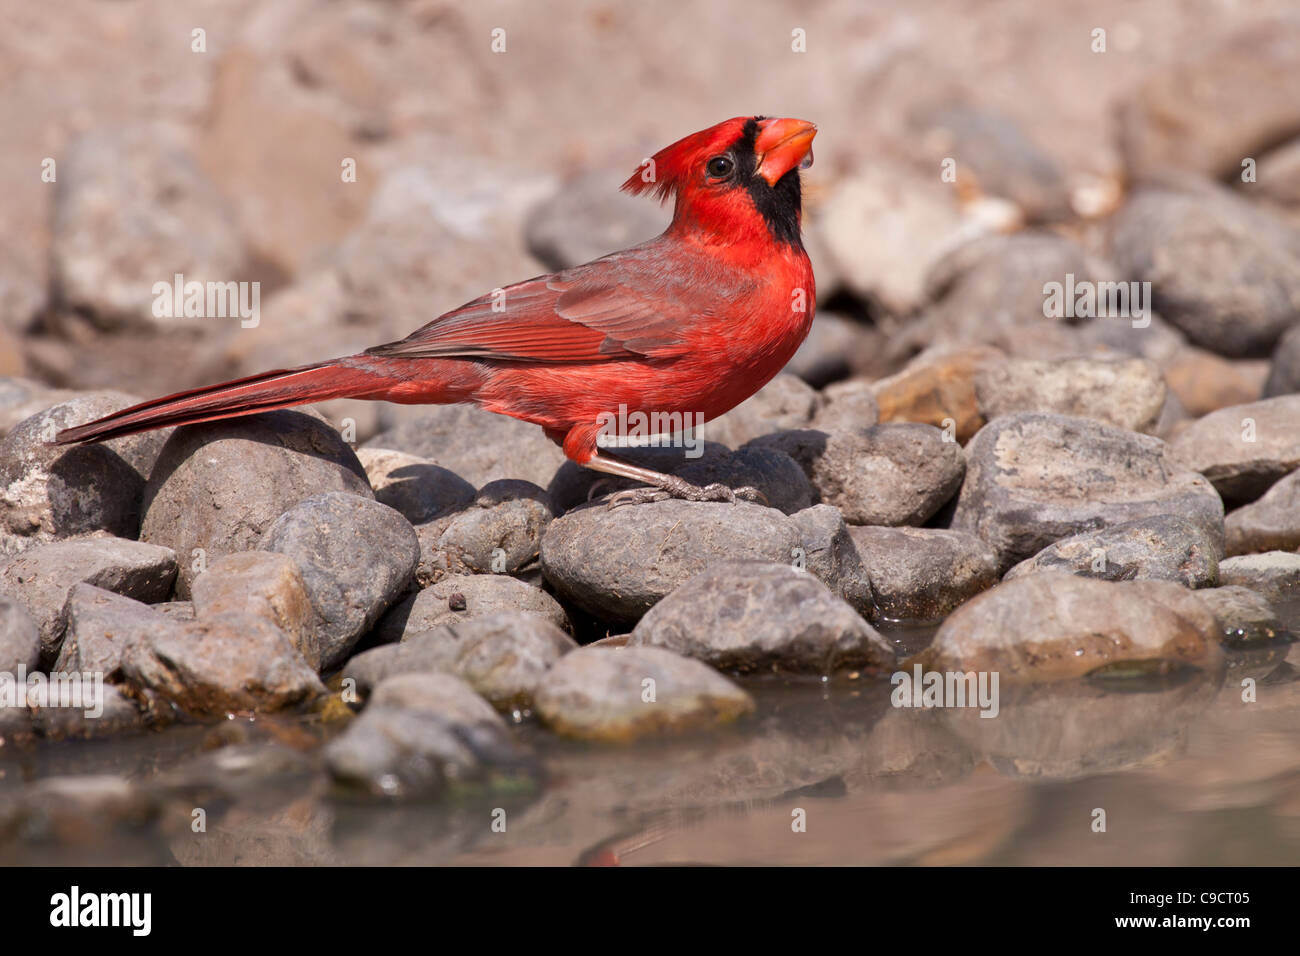 Northern Cardinal, Cardinalis cardinalis, at the Javelina-Martin wildlife refuge in South Texas. Stock Photo